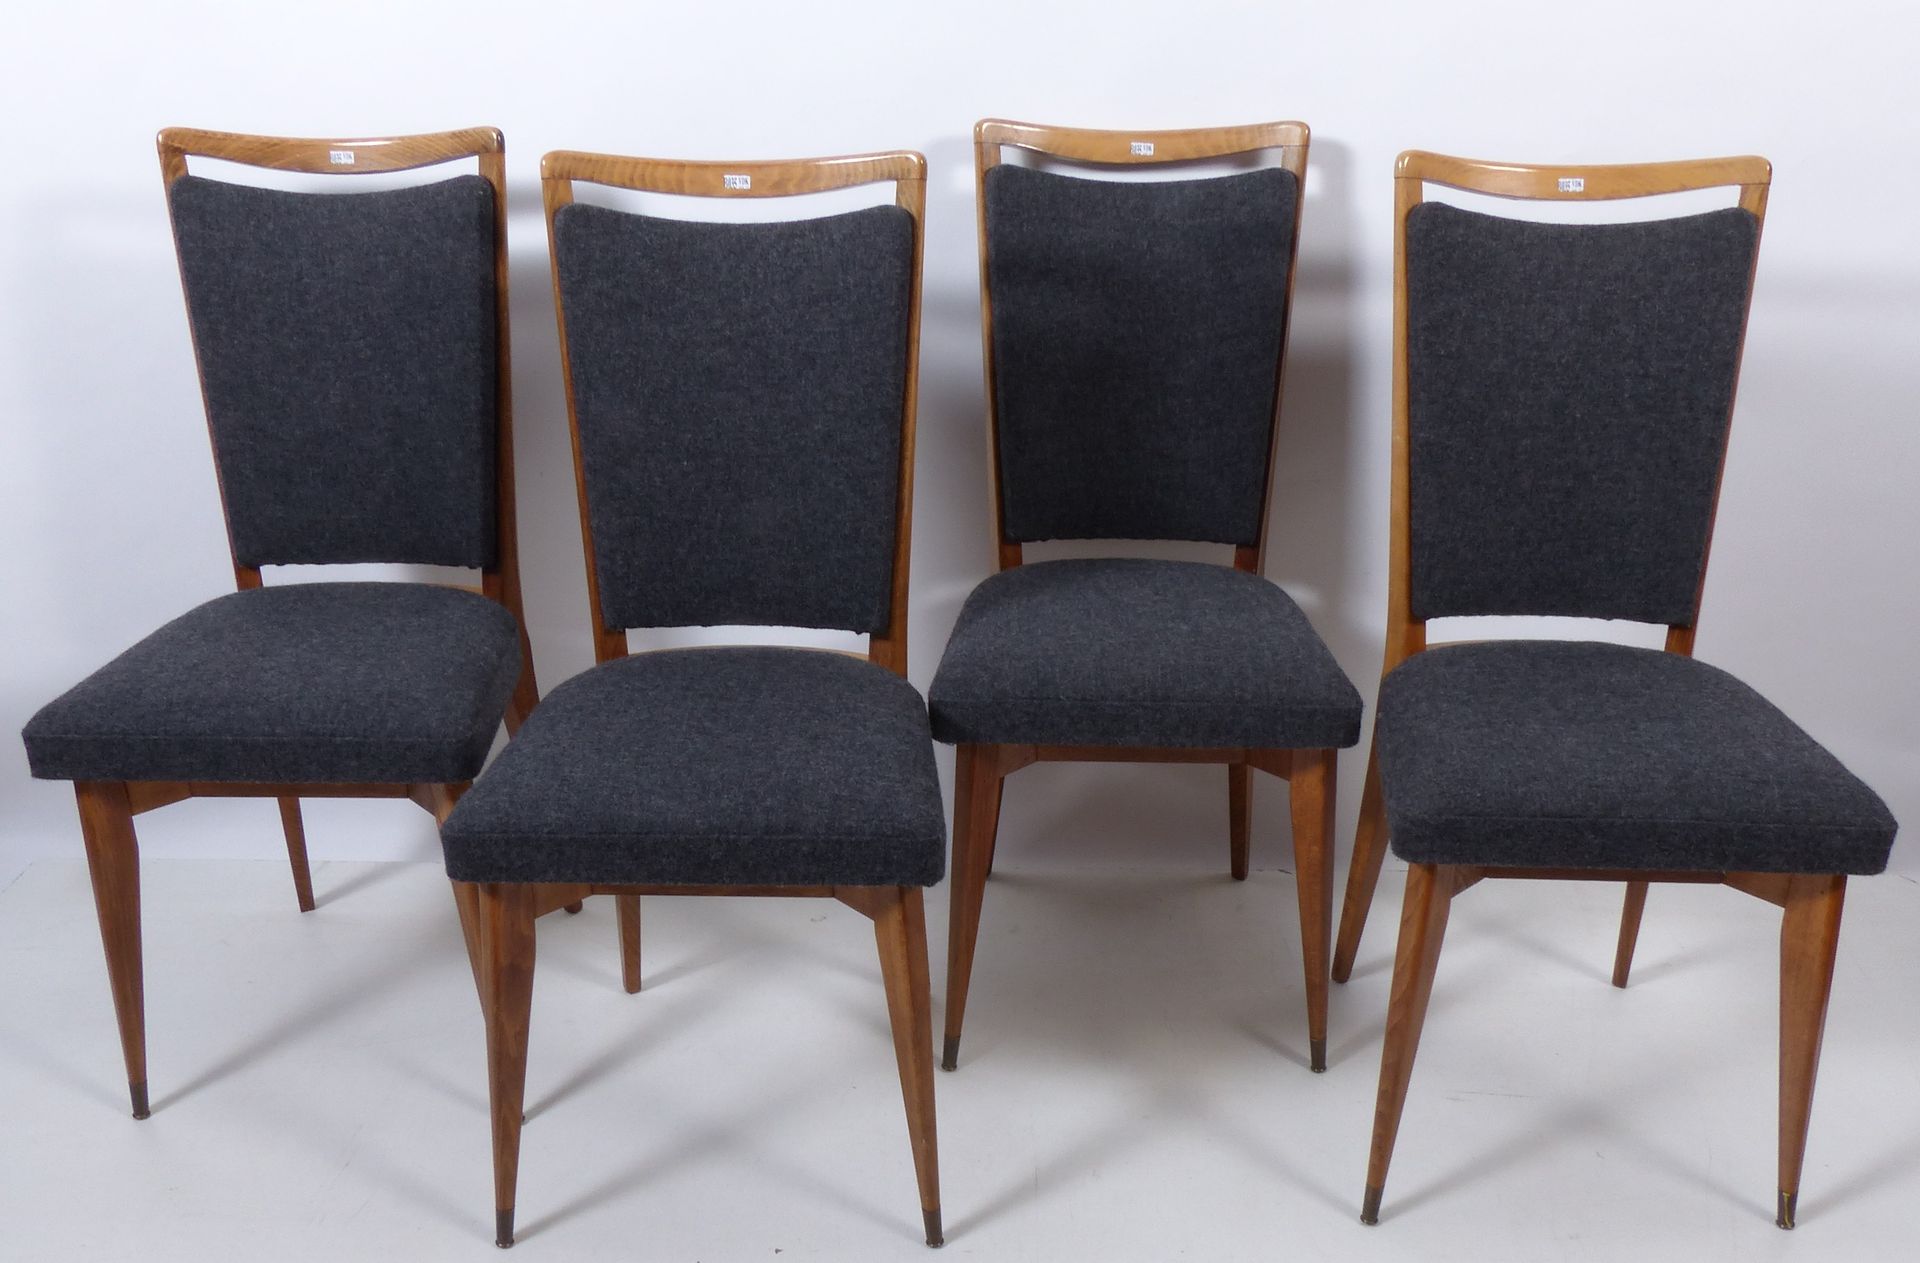 Null Conjunto de 4 sillas italianas. Alrededor de 1950/60.